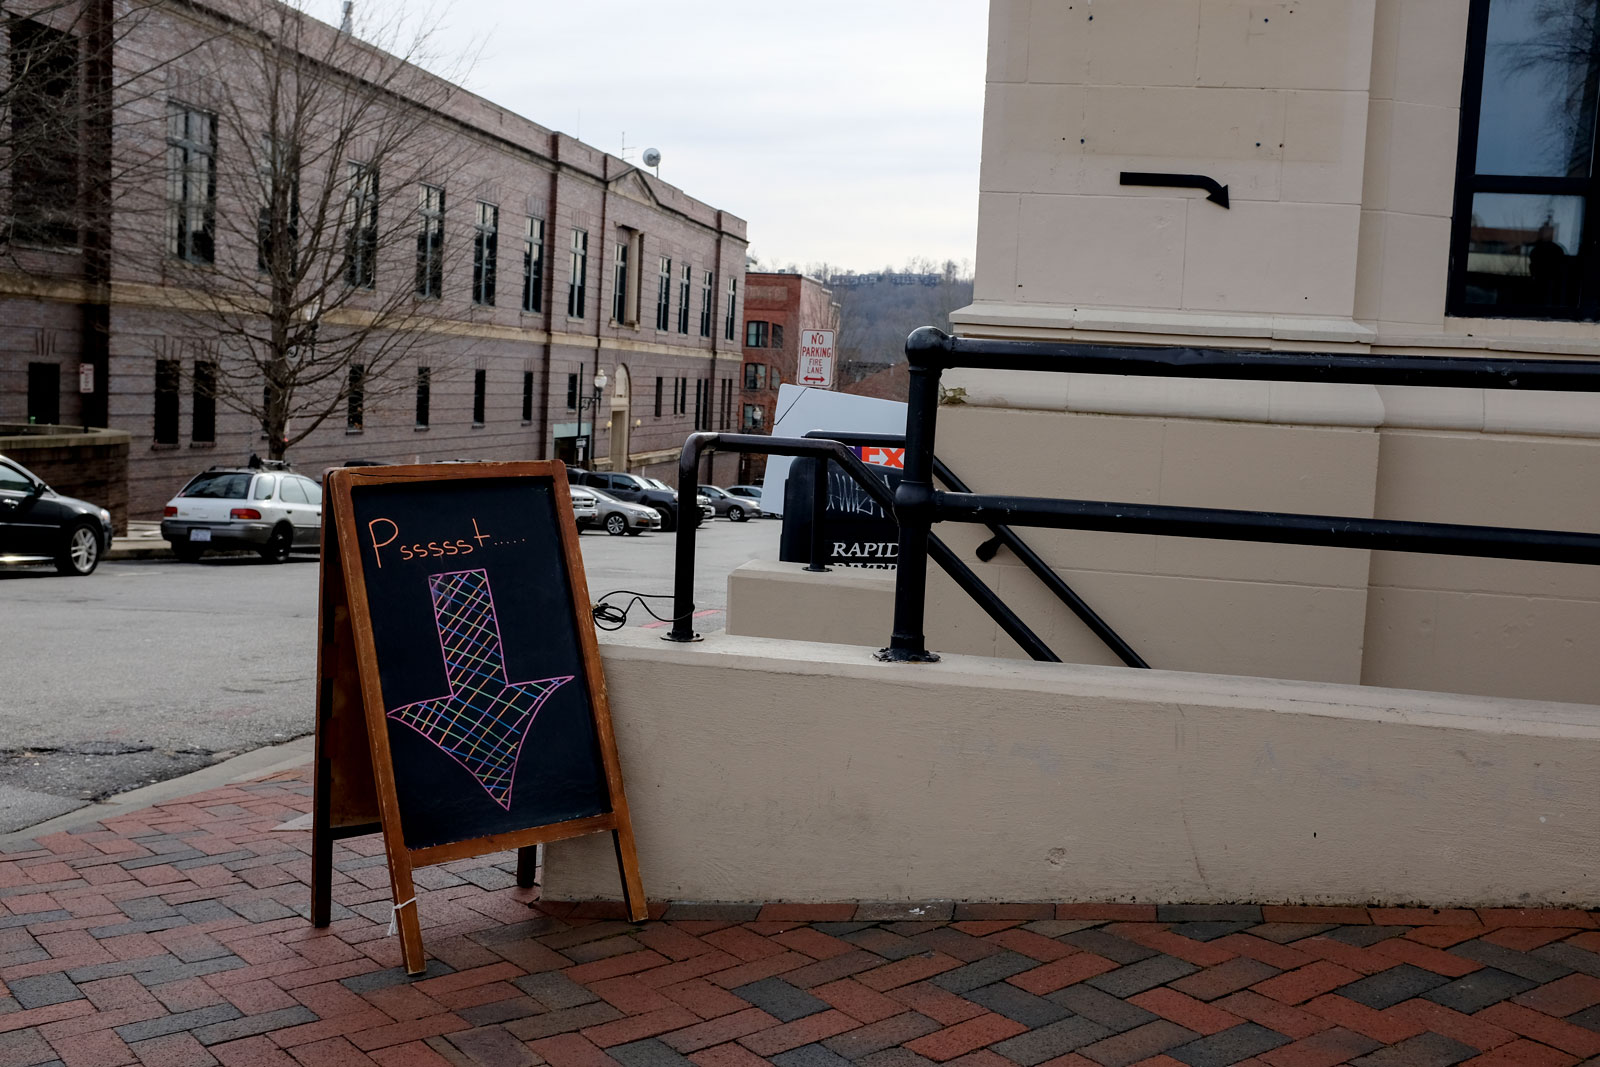 A sandwich board reads "psssst" in downtown Asheville